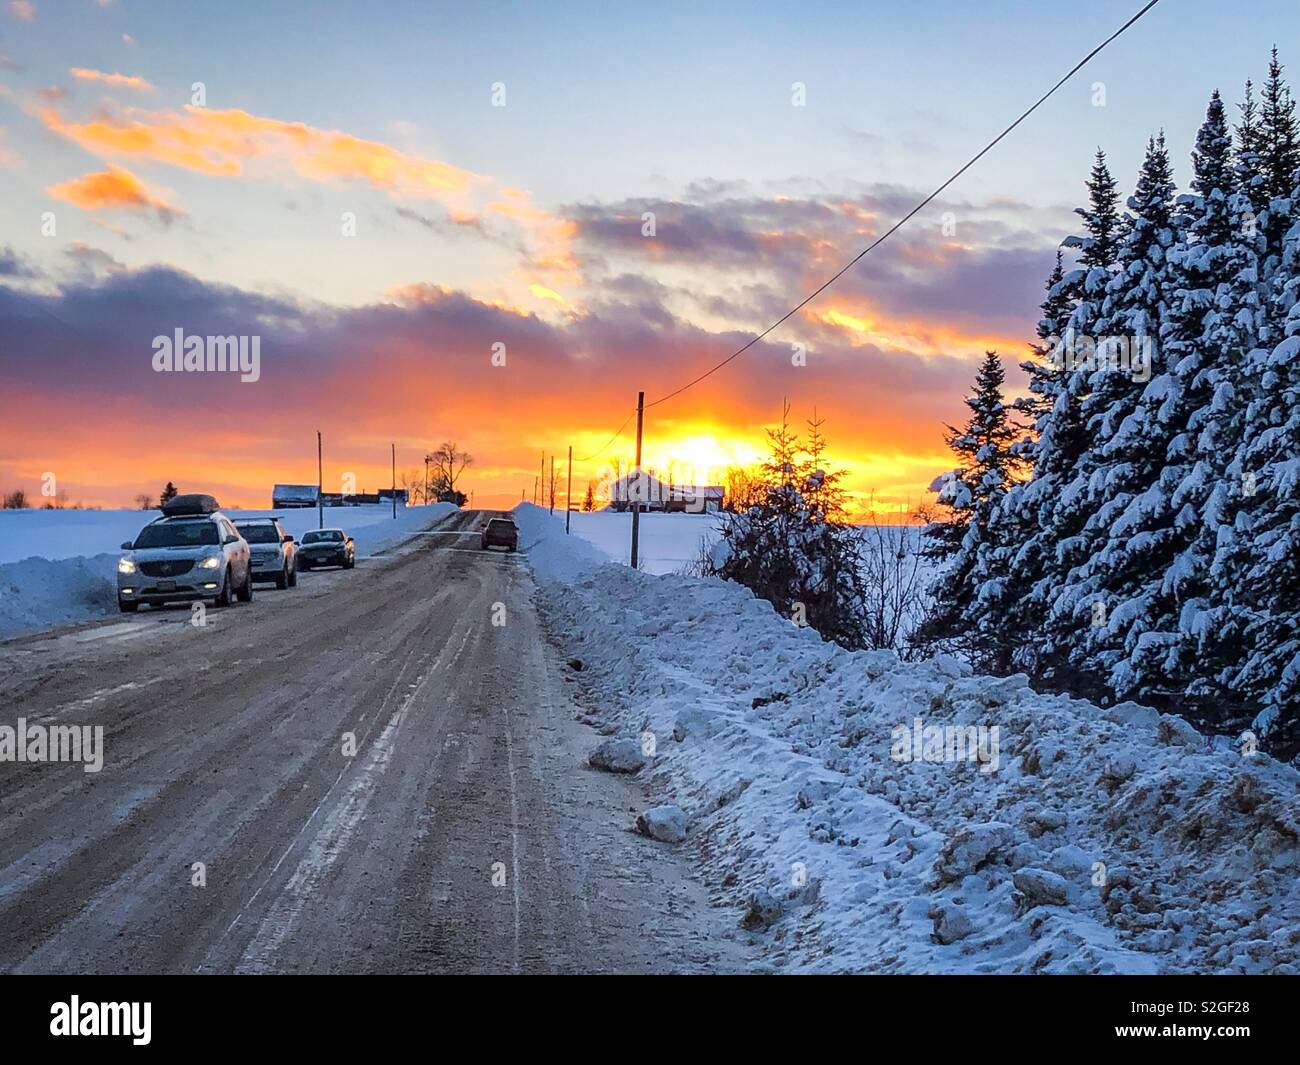 Una coperta di neve strada rurale al tramonto. Le automobili sono fermato sul lato della strada. Un agriturismo può essere visto in lontananza. Foto Stock